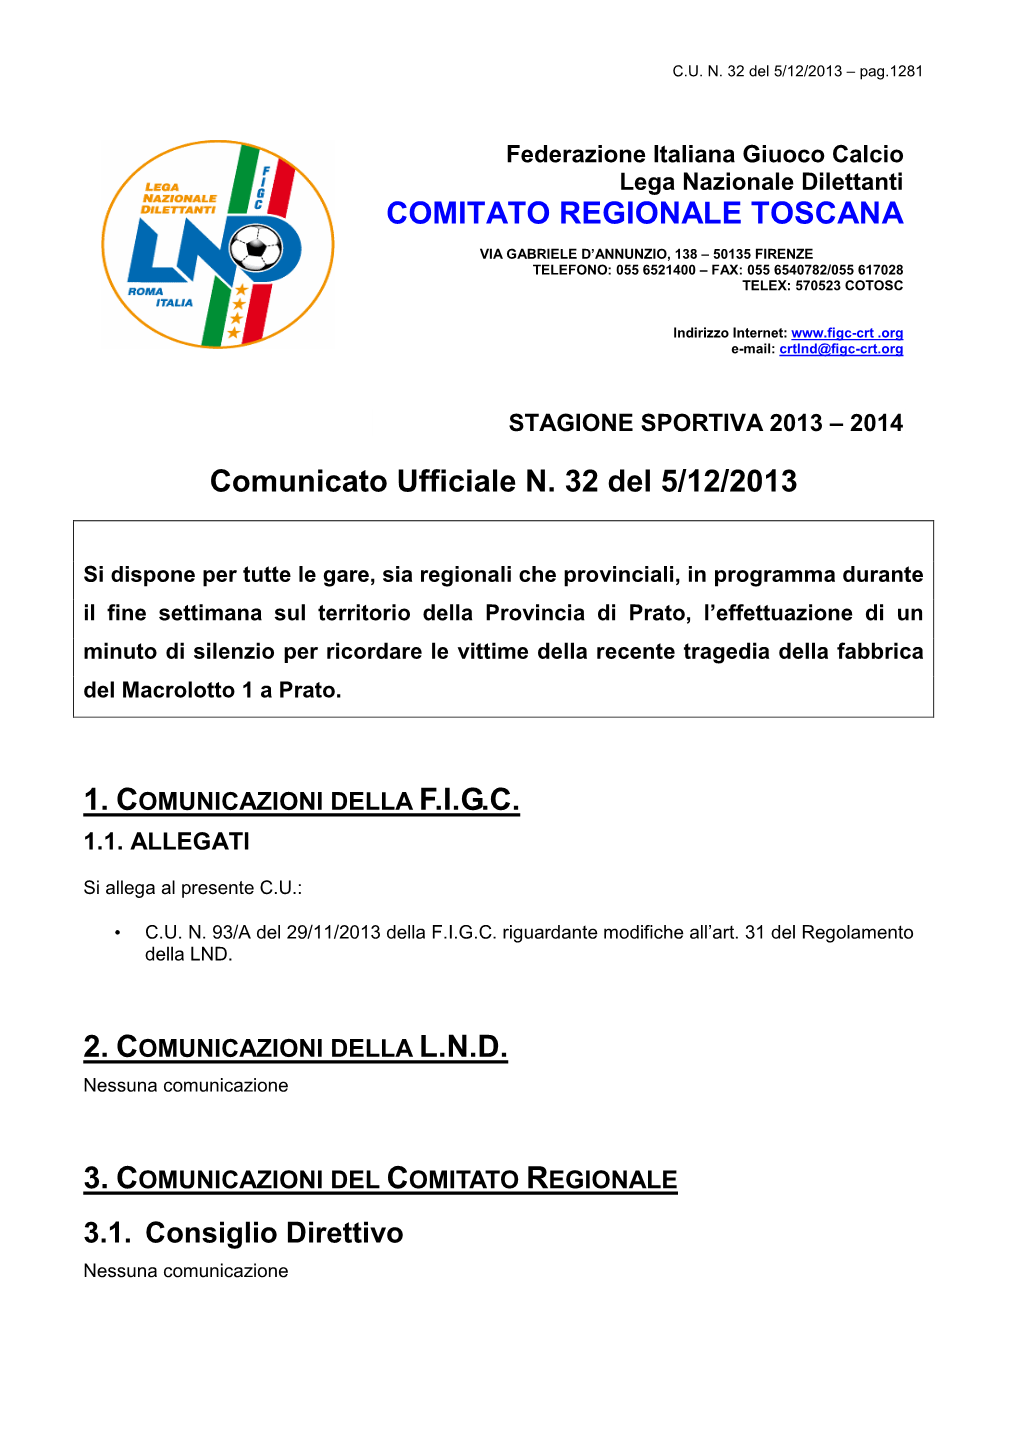 Comunicato Ufficiale N. 32 Del 5/12/2013 COMITATO REGIONALE